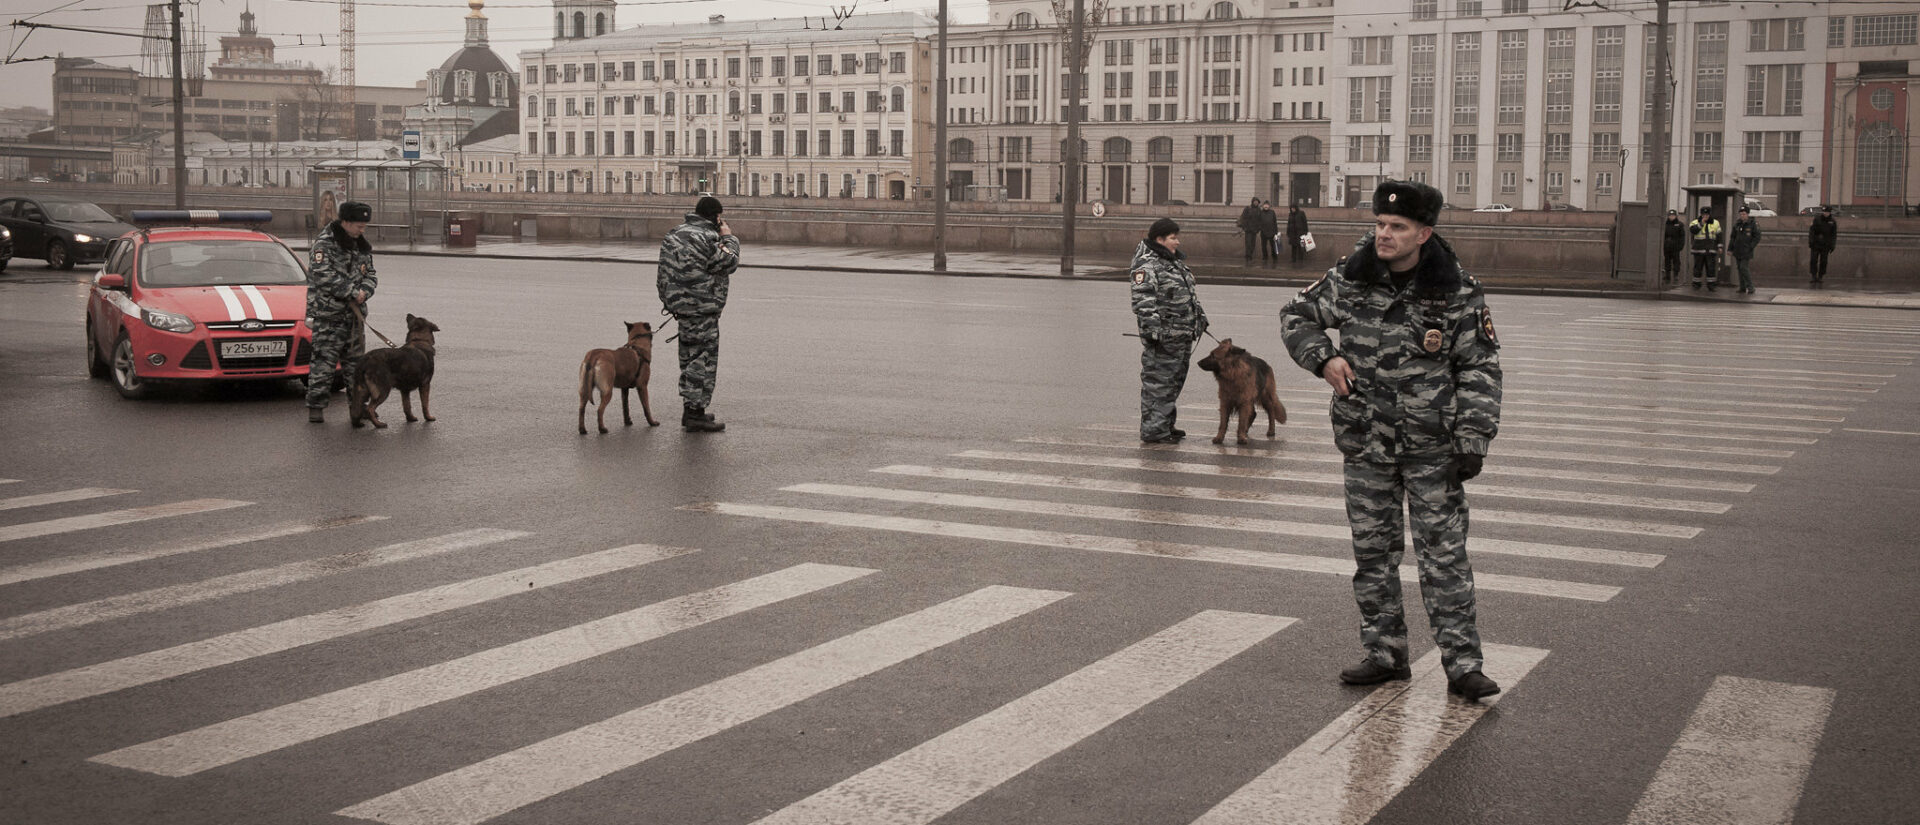 Les forces de l'ordre moscovites ont arrêté l'assaillant | photo d'illustration © Evgeniy Isaev/Flickr/CC BY 2.0